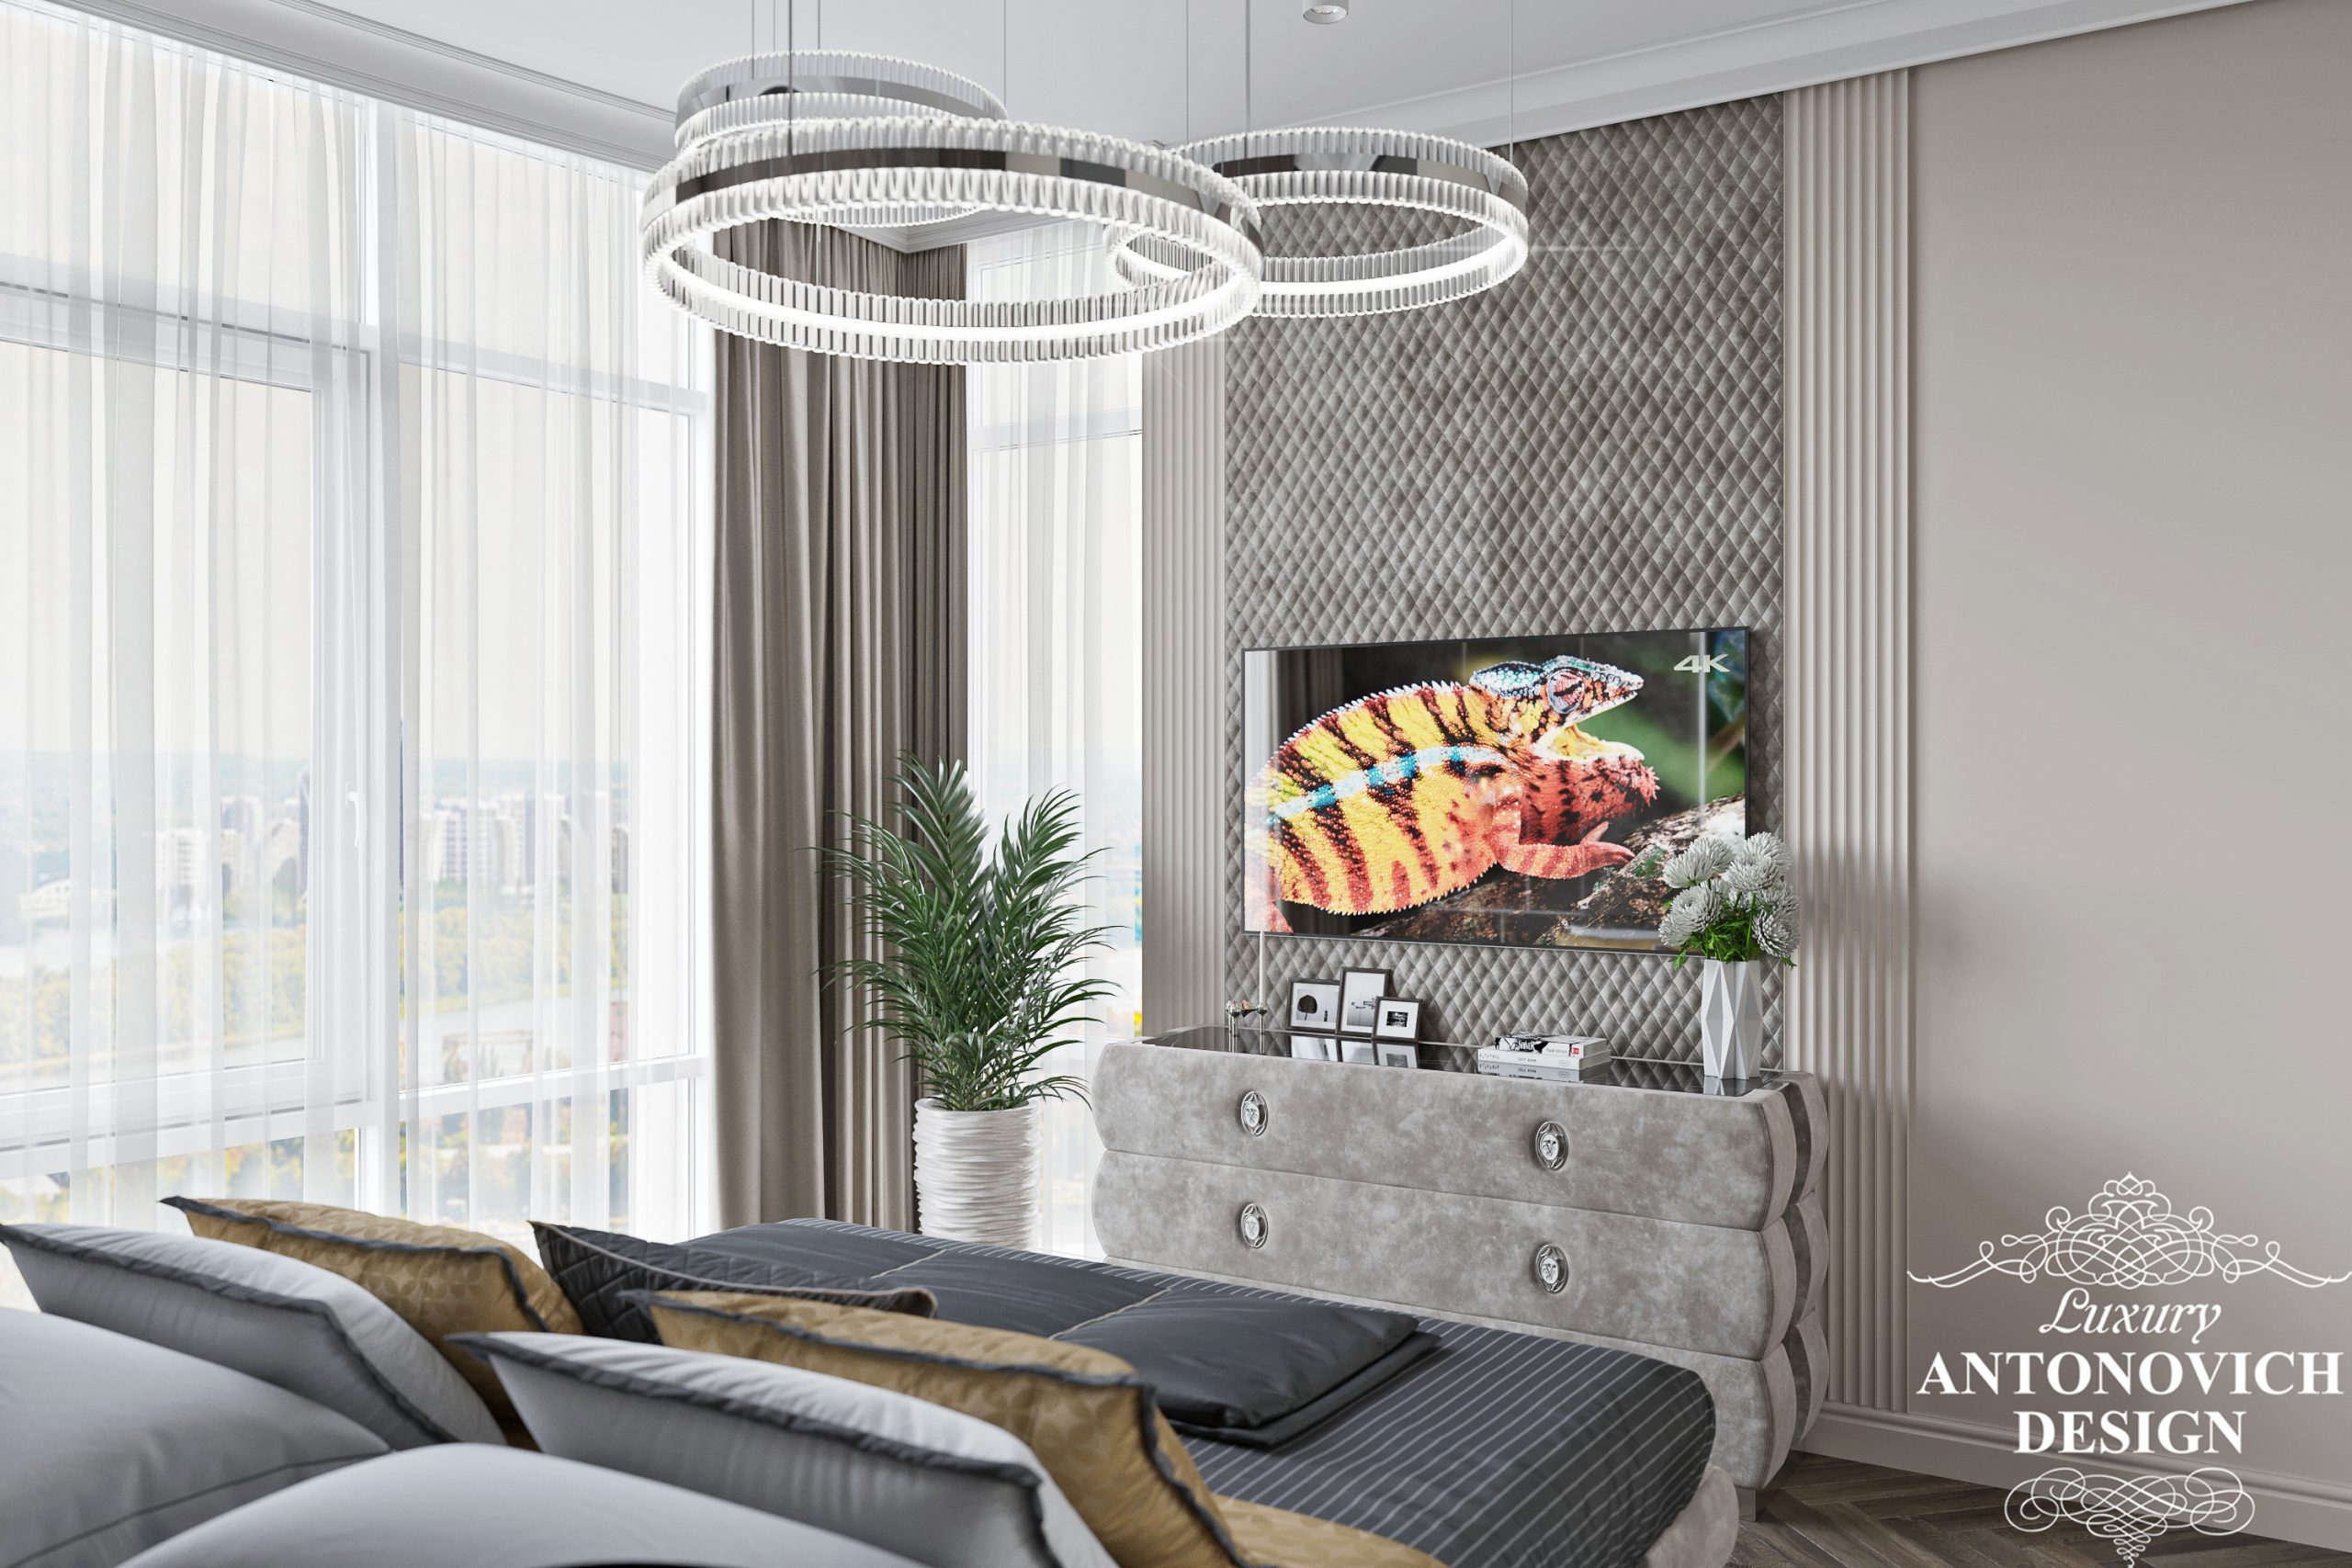 Ексклюзивні дизайнерські меблі і приголомшливе освітлення в авторському проекті дизайнерської спальні